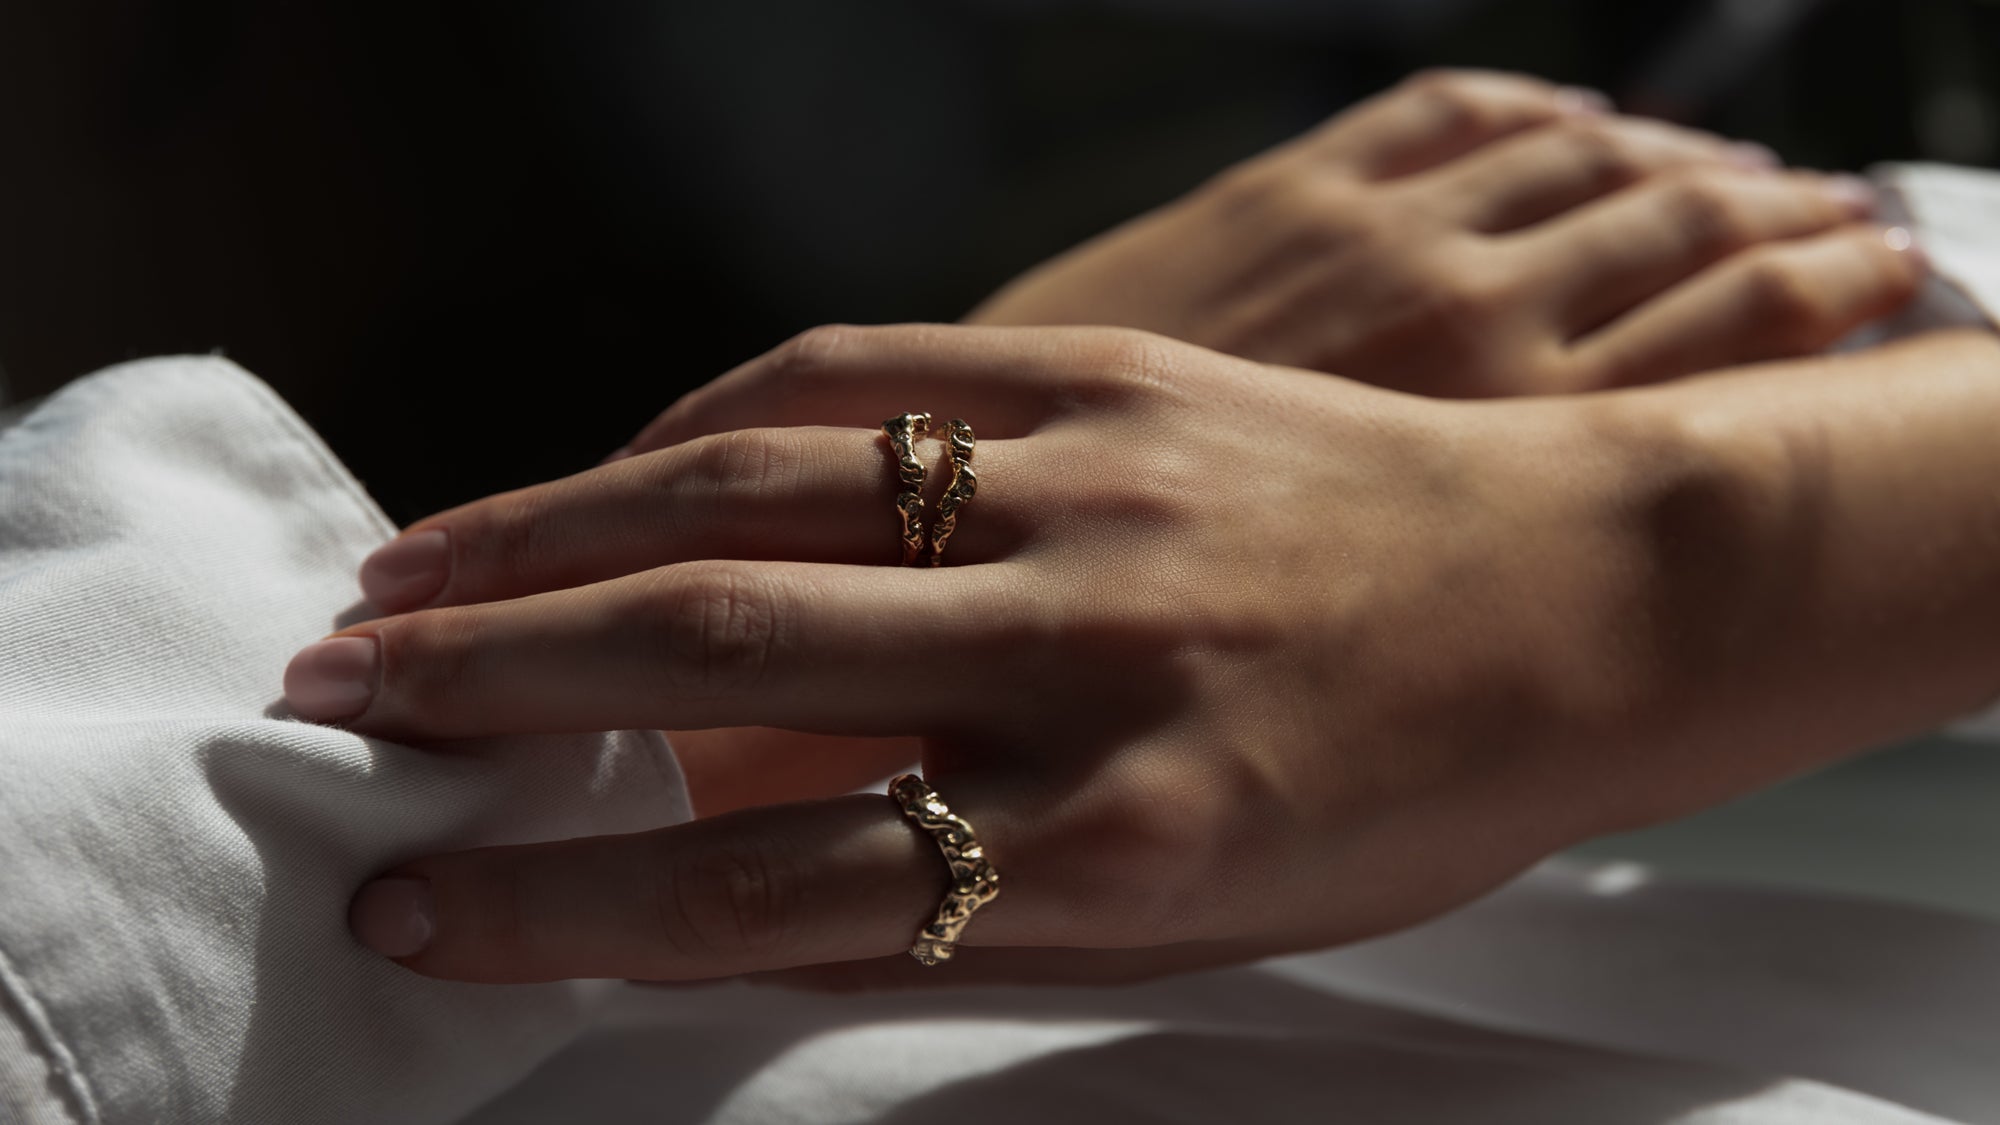 to hænder, med den højre over den venstre, hvorpå der er to organisk designet ringe på. Begge ringe er i guld med diamanter der glimter. Sort baggrund og hvid skjorteærmer 